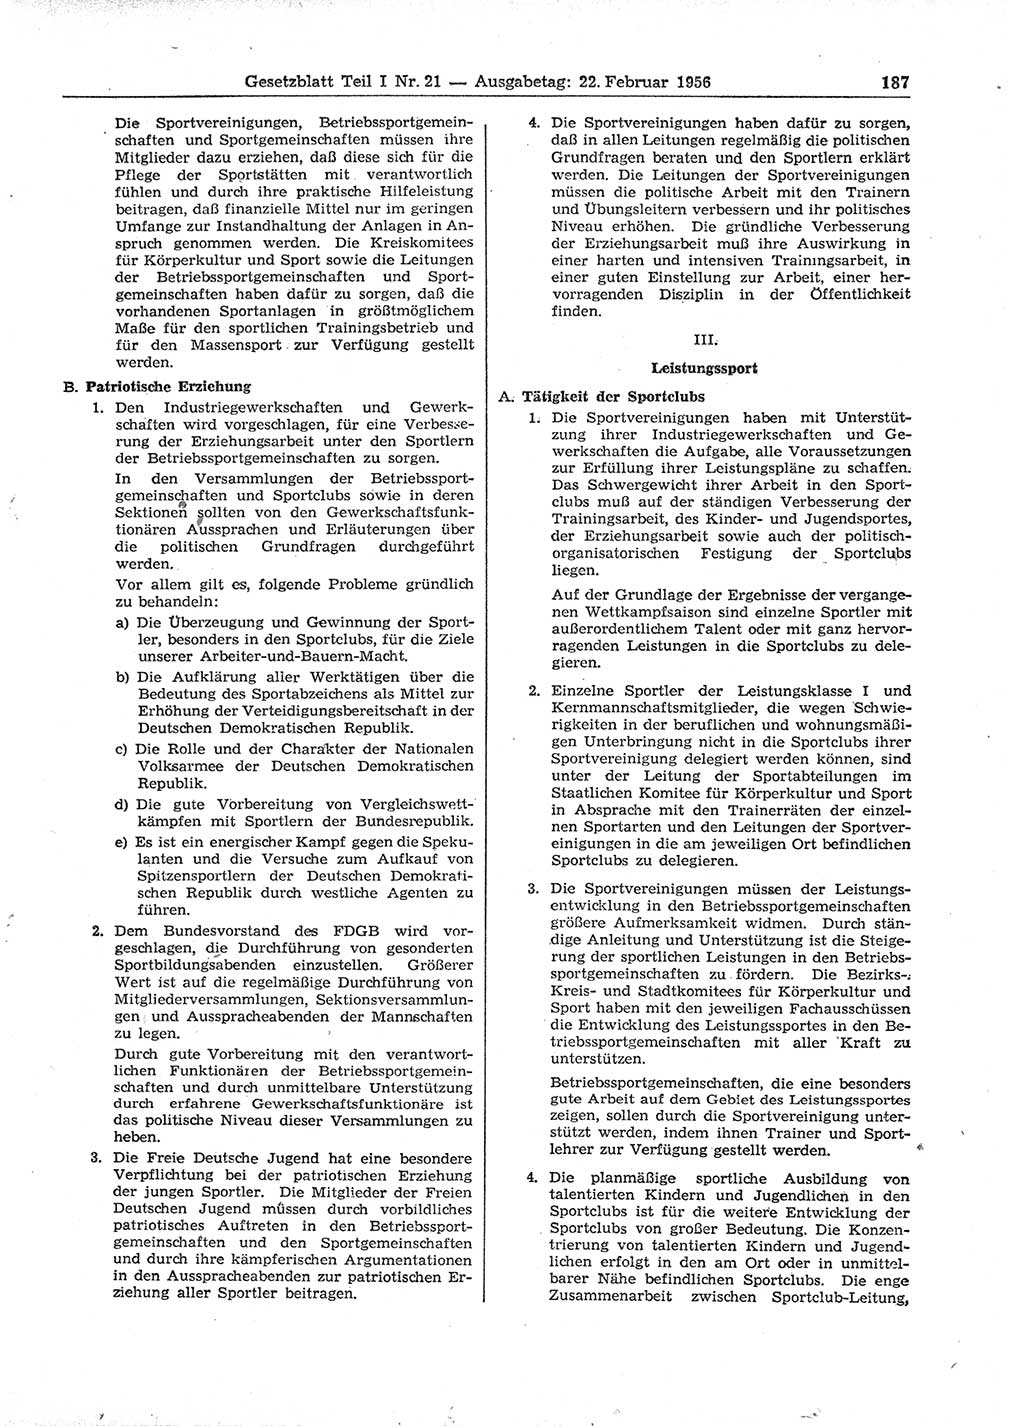 Gesetzblatt (GBl.) der Deutschen Demokratischen Republik (DDR) Teil Ⅰ 1956, Seite 187 (GBl. DDR Ⅰ 1956, S. 187)